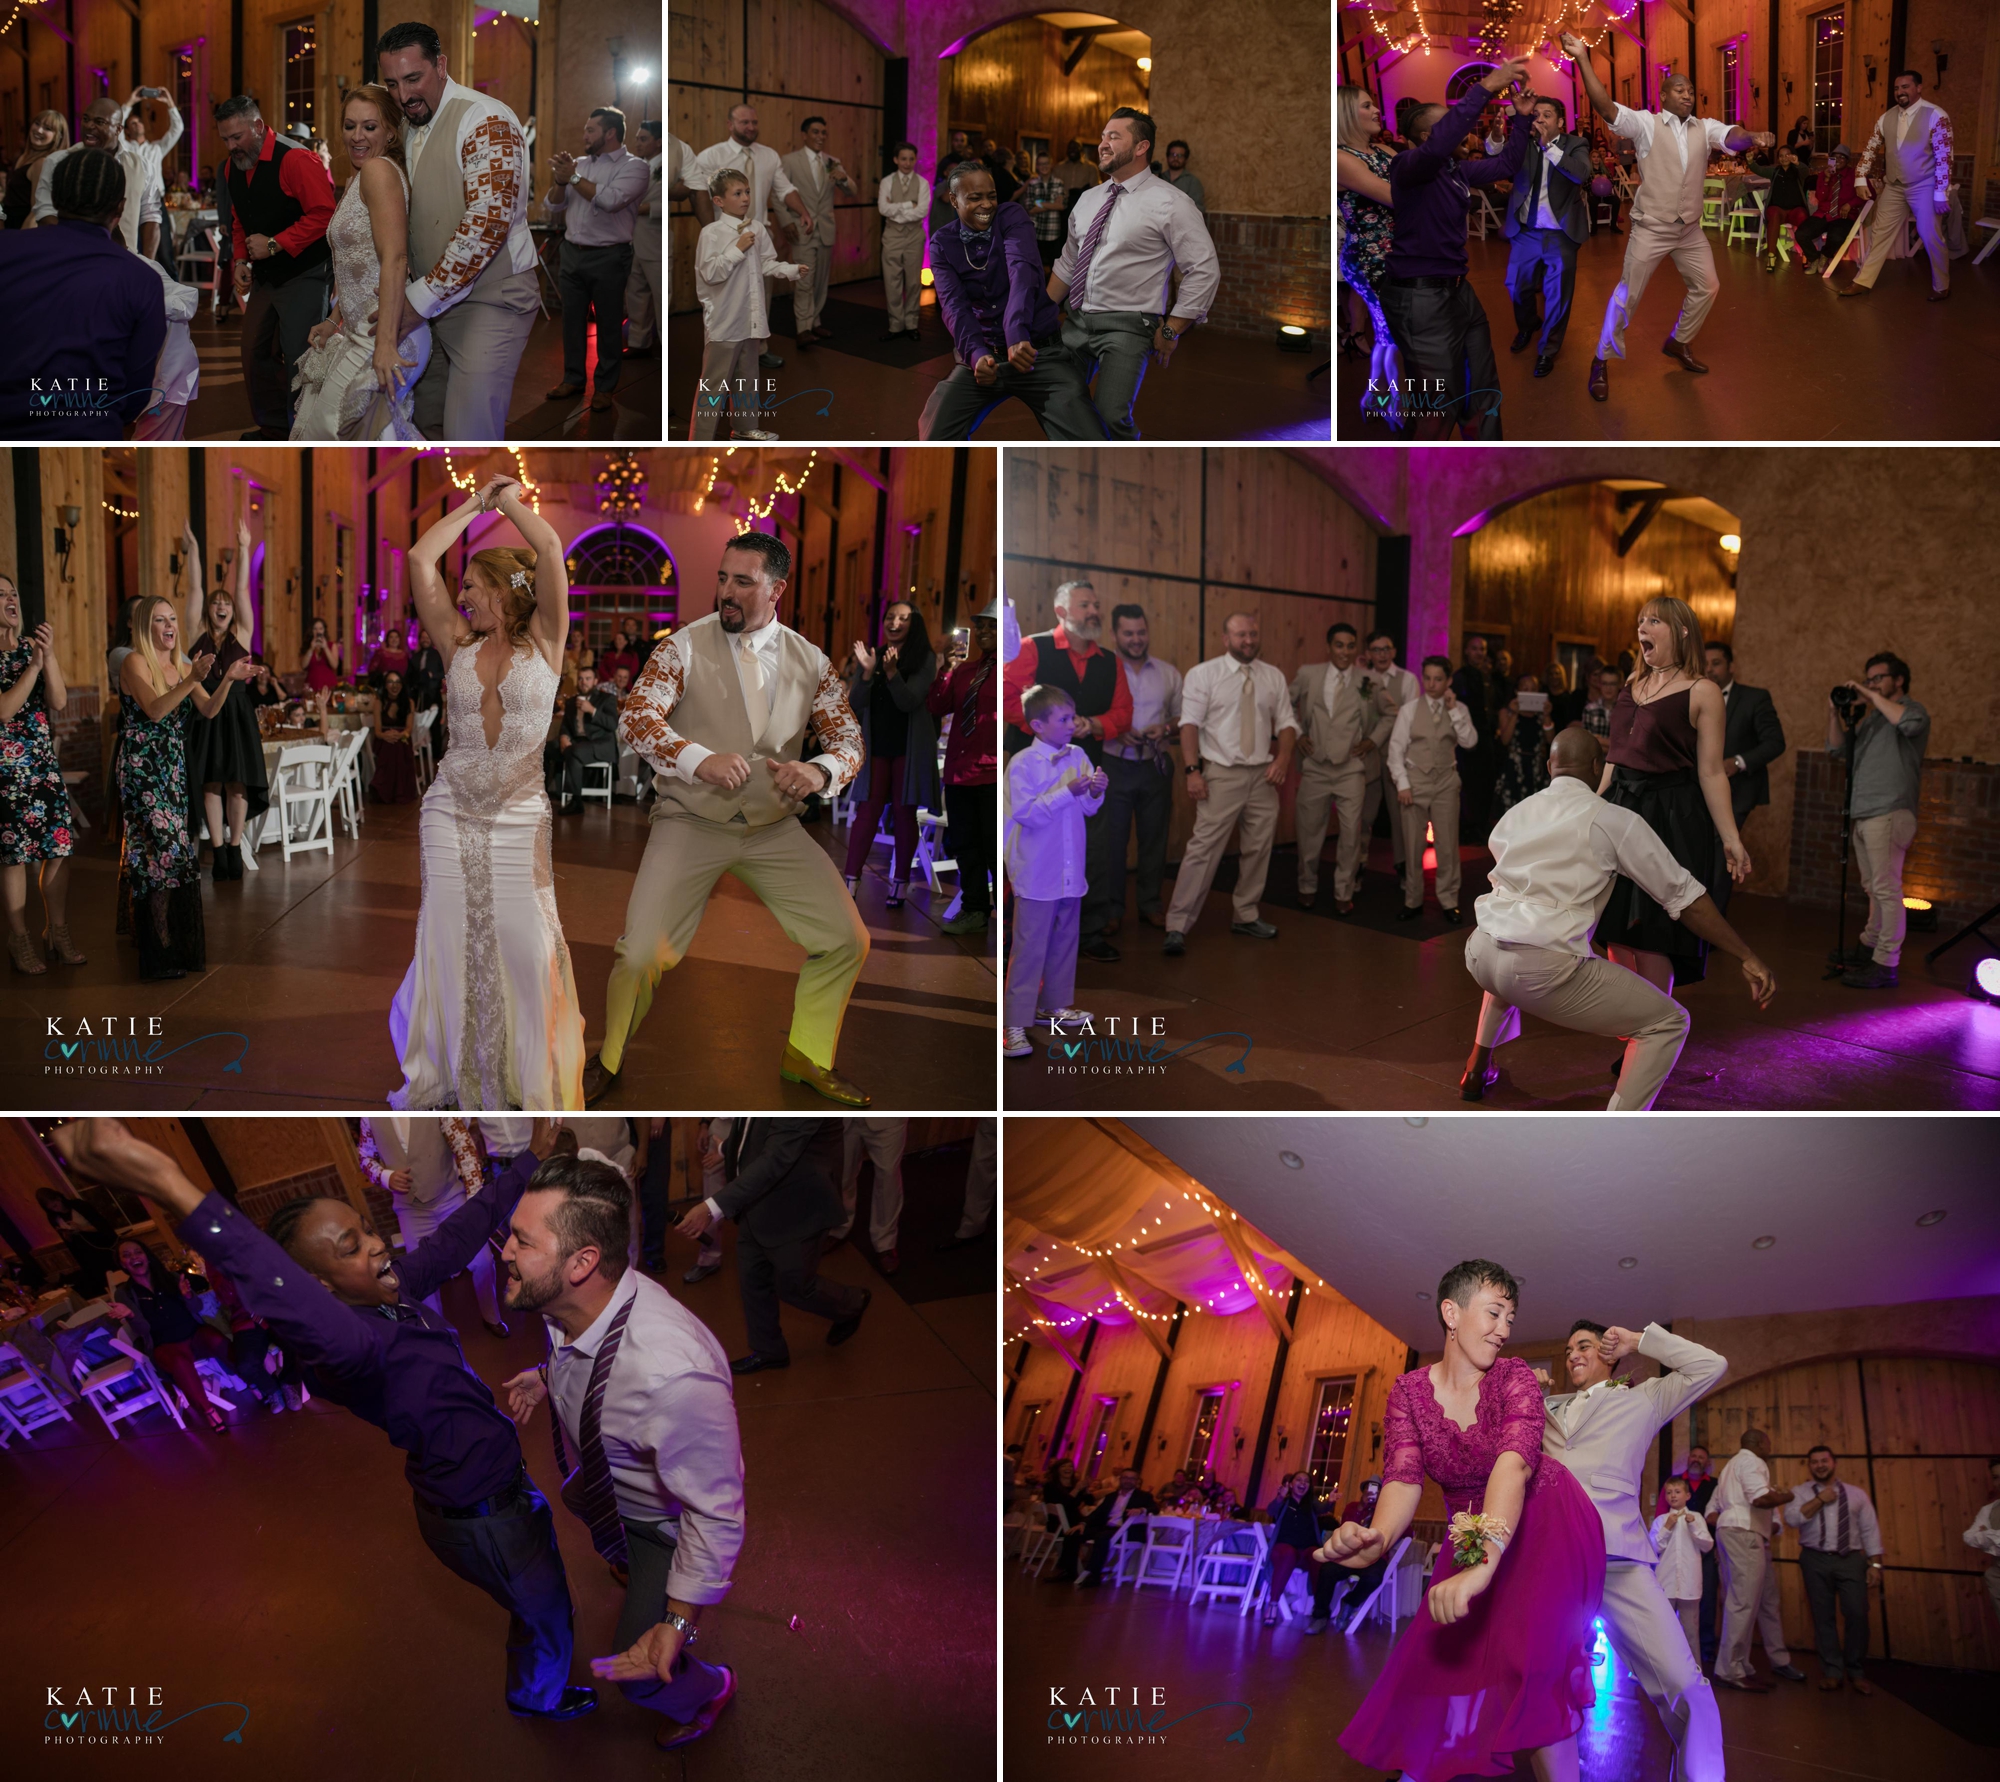 bride and groom dance at wedding reception in Colorado Springs